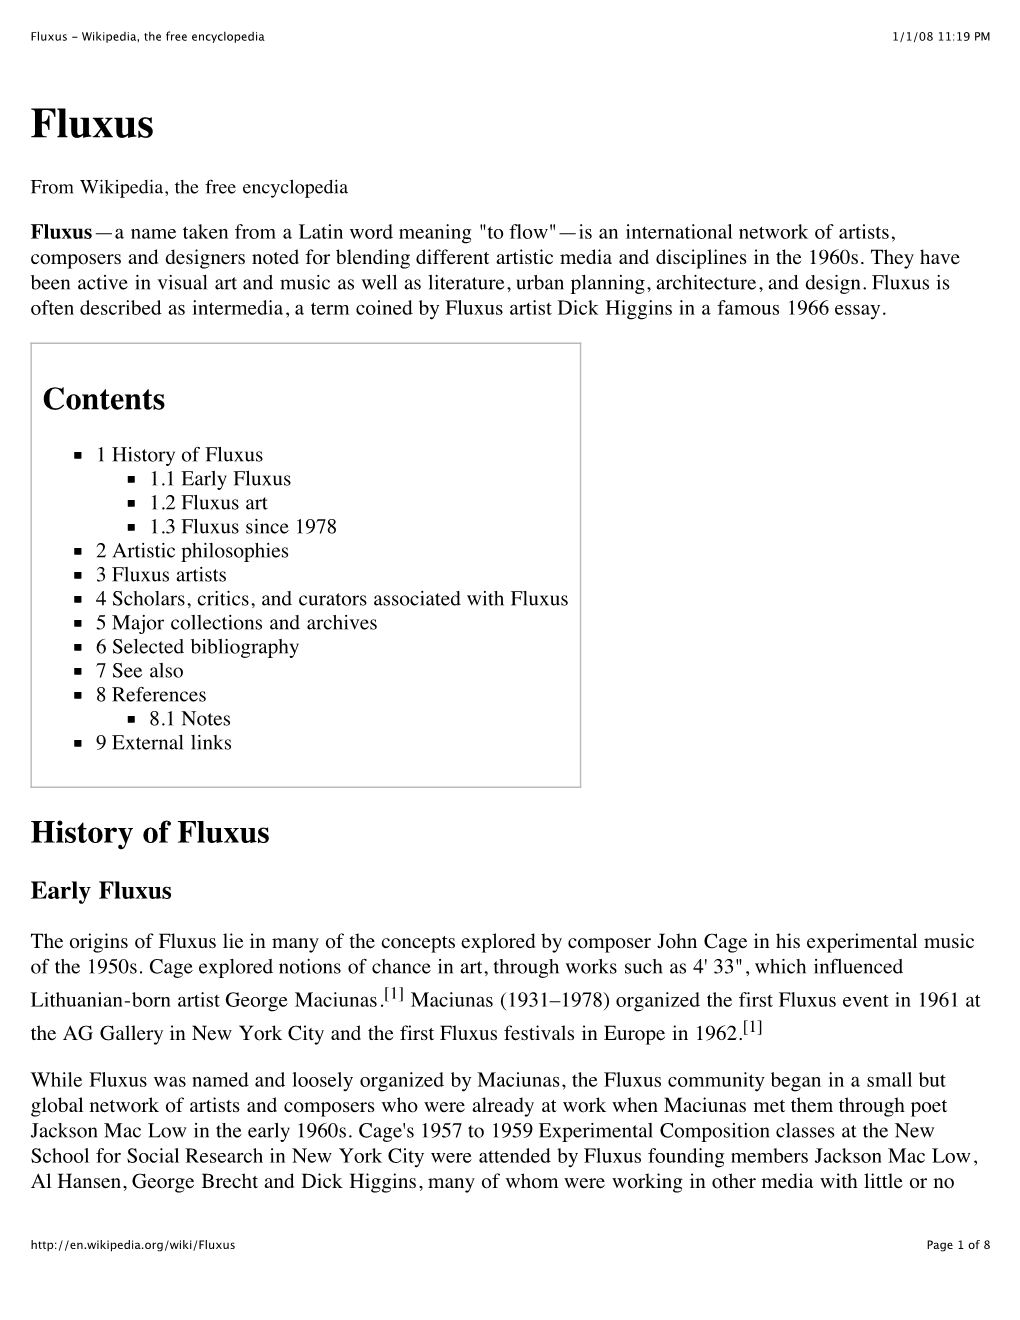 Fluxus - Wikipedia, the Free Encyclopedia 1/1/08 11:19 PM